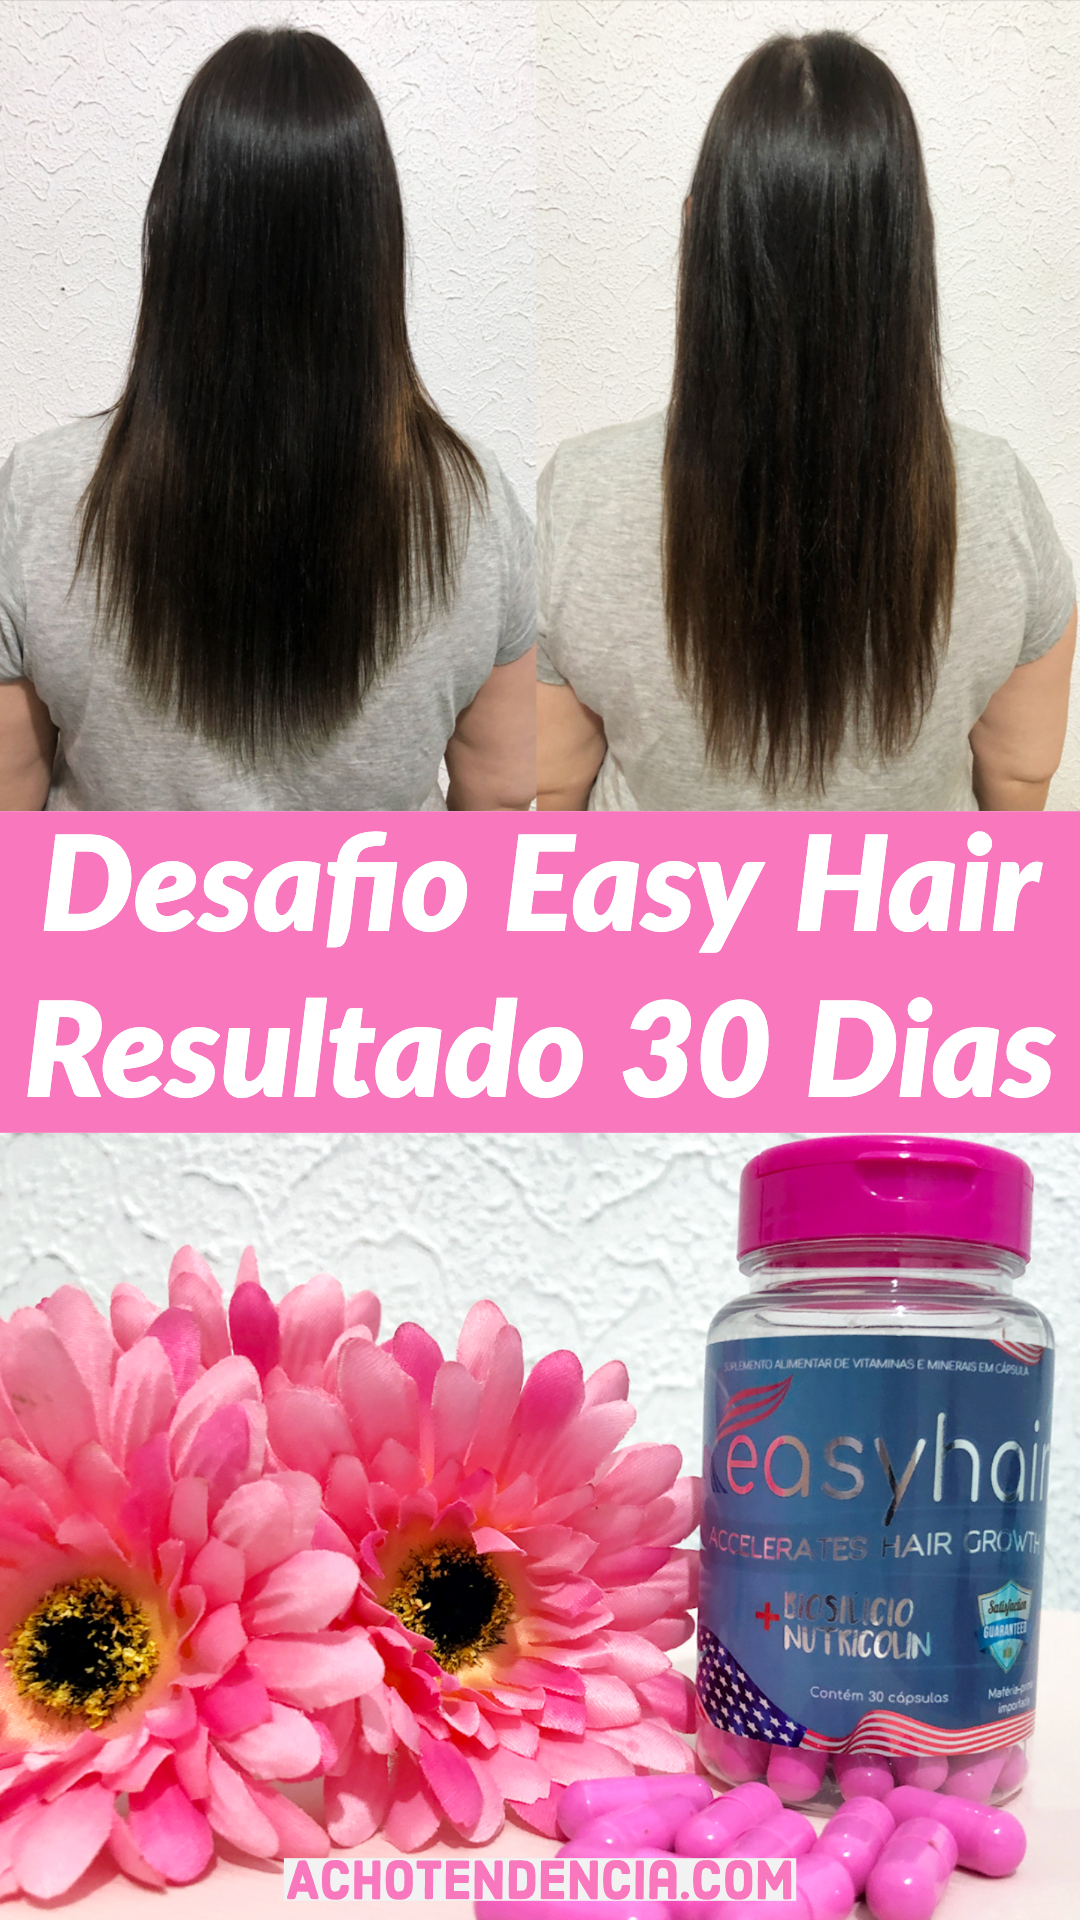 easy hair, cabelo, vitamina, complexo vitaminico, crescer cabelo, resenha, crescimento, desafio